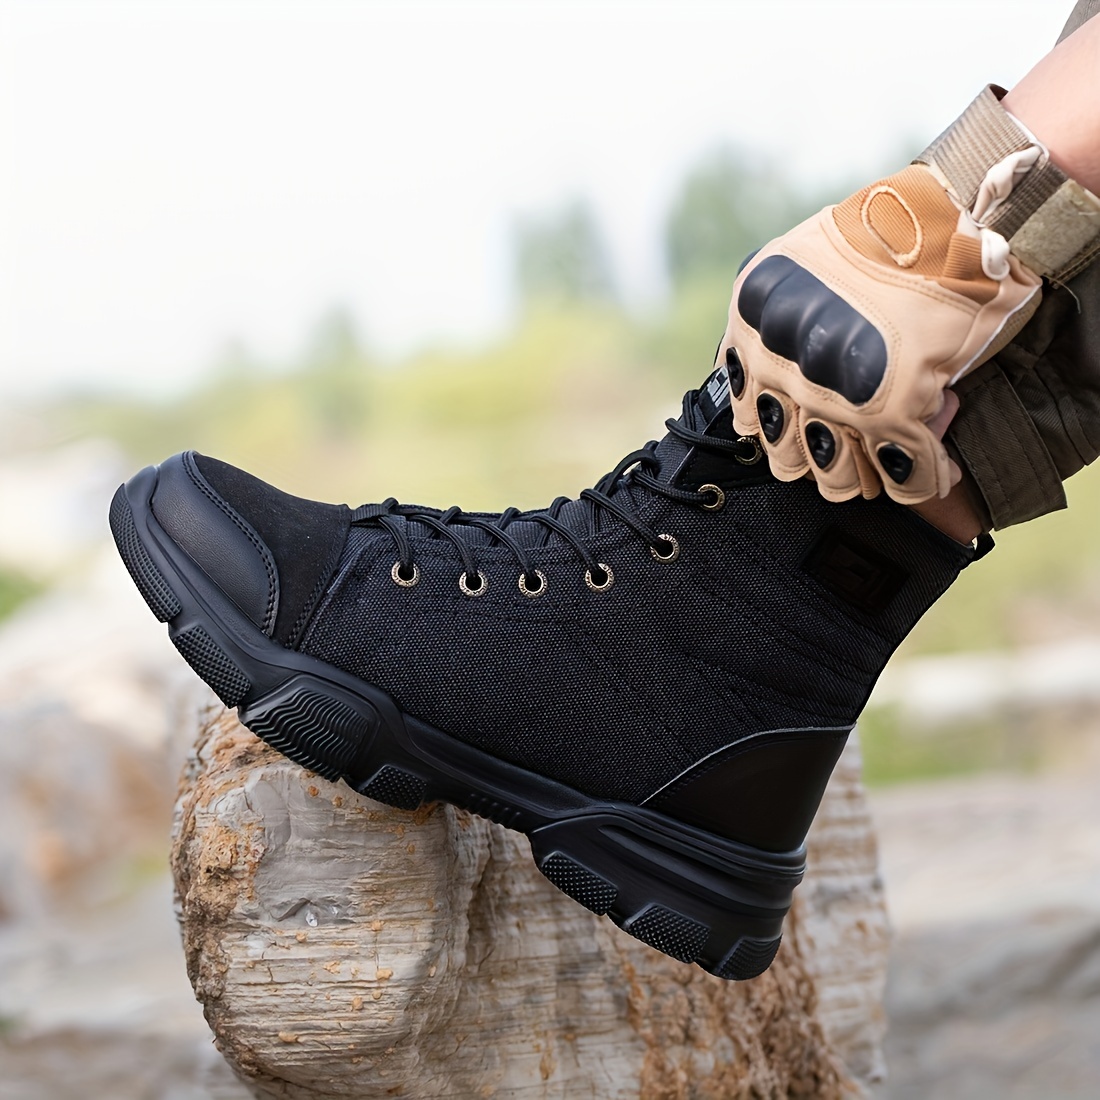 Guia de compra de plantillas para botas y calzado de trabajo o seguridad ( Hombres y Mujeres) - Seguridad en Calzado